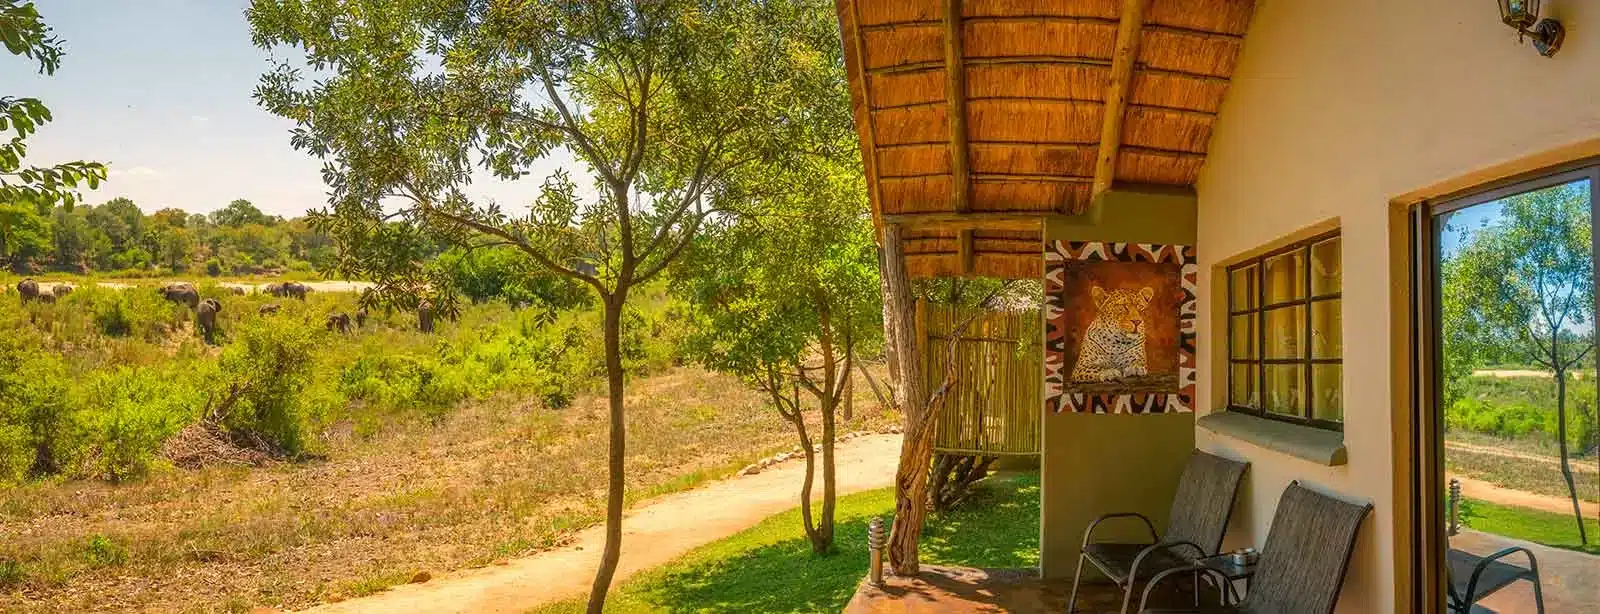 6 Umkumbe Safari Lodge